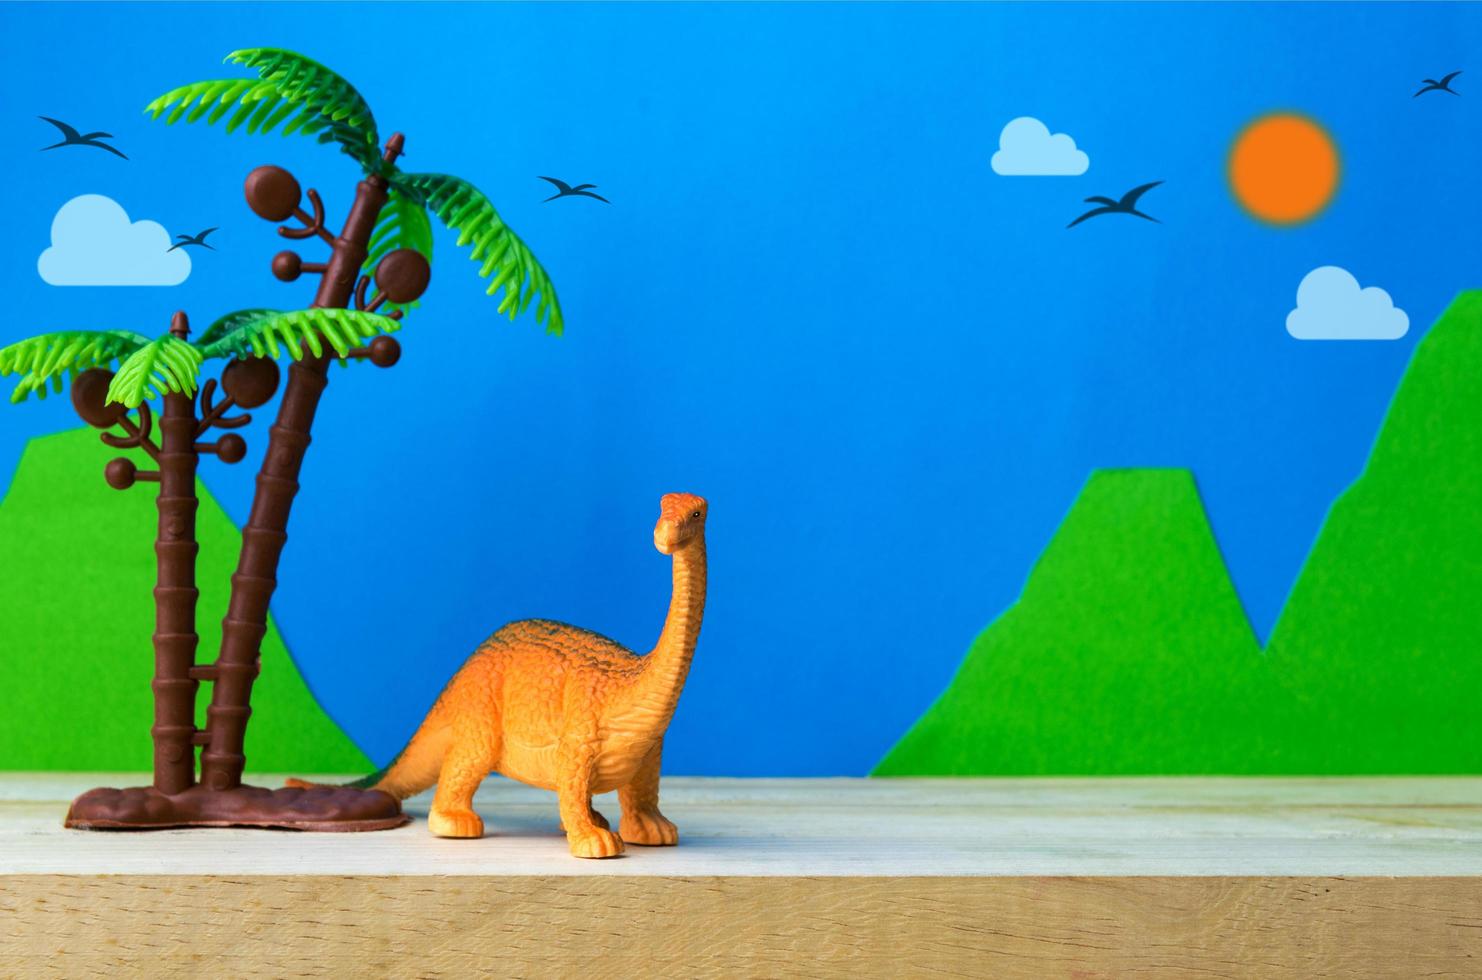 Brachiosaurus-Dinosaurier-Spielzeugmodell auf wildem Modellhintergrund foto